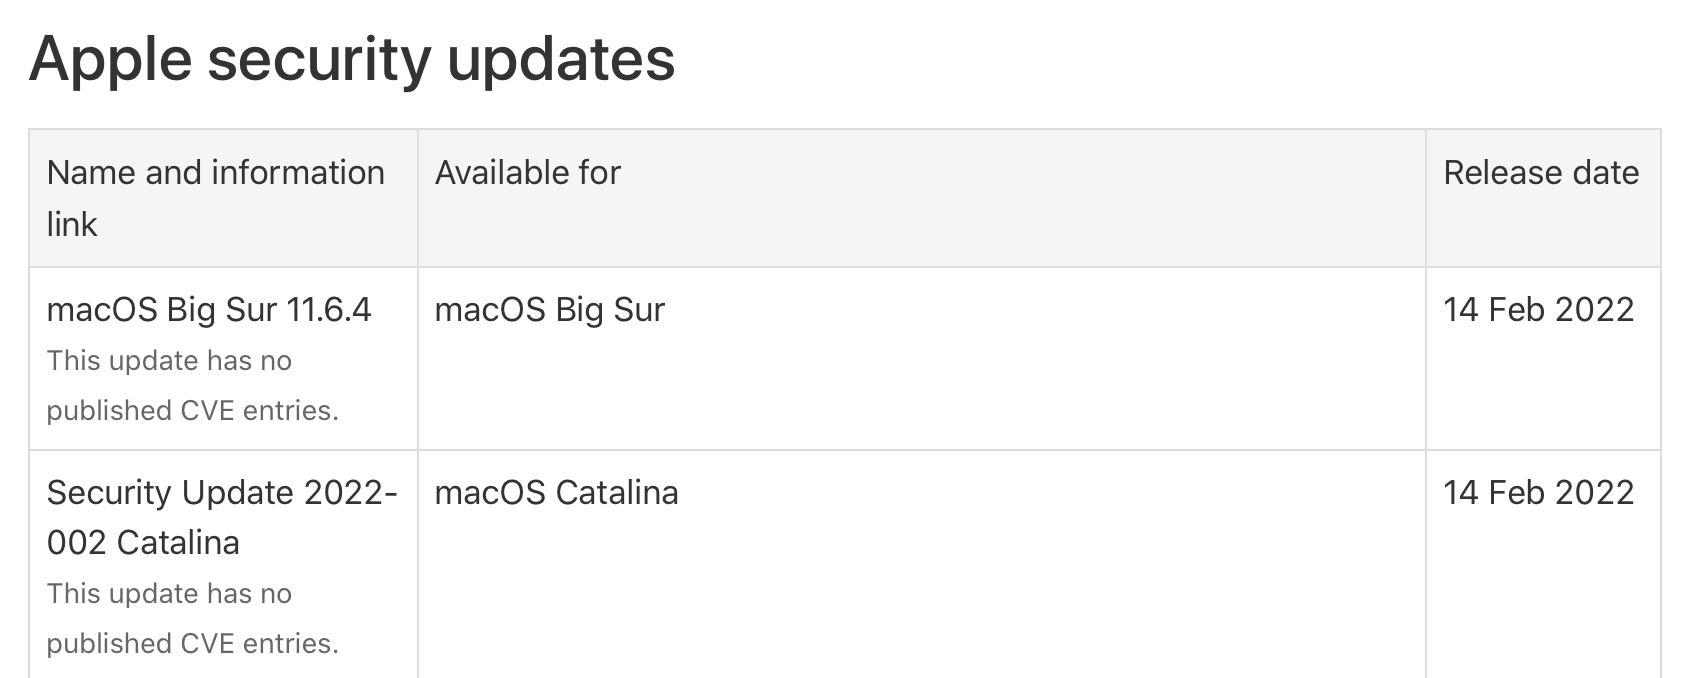 蘋果發布 macOS Big Sur 11.6.4 更新，包含安全改進功能